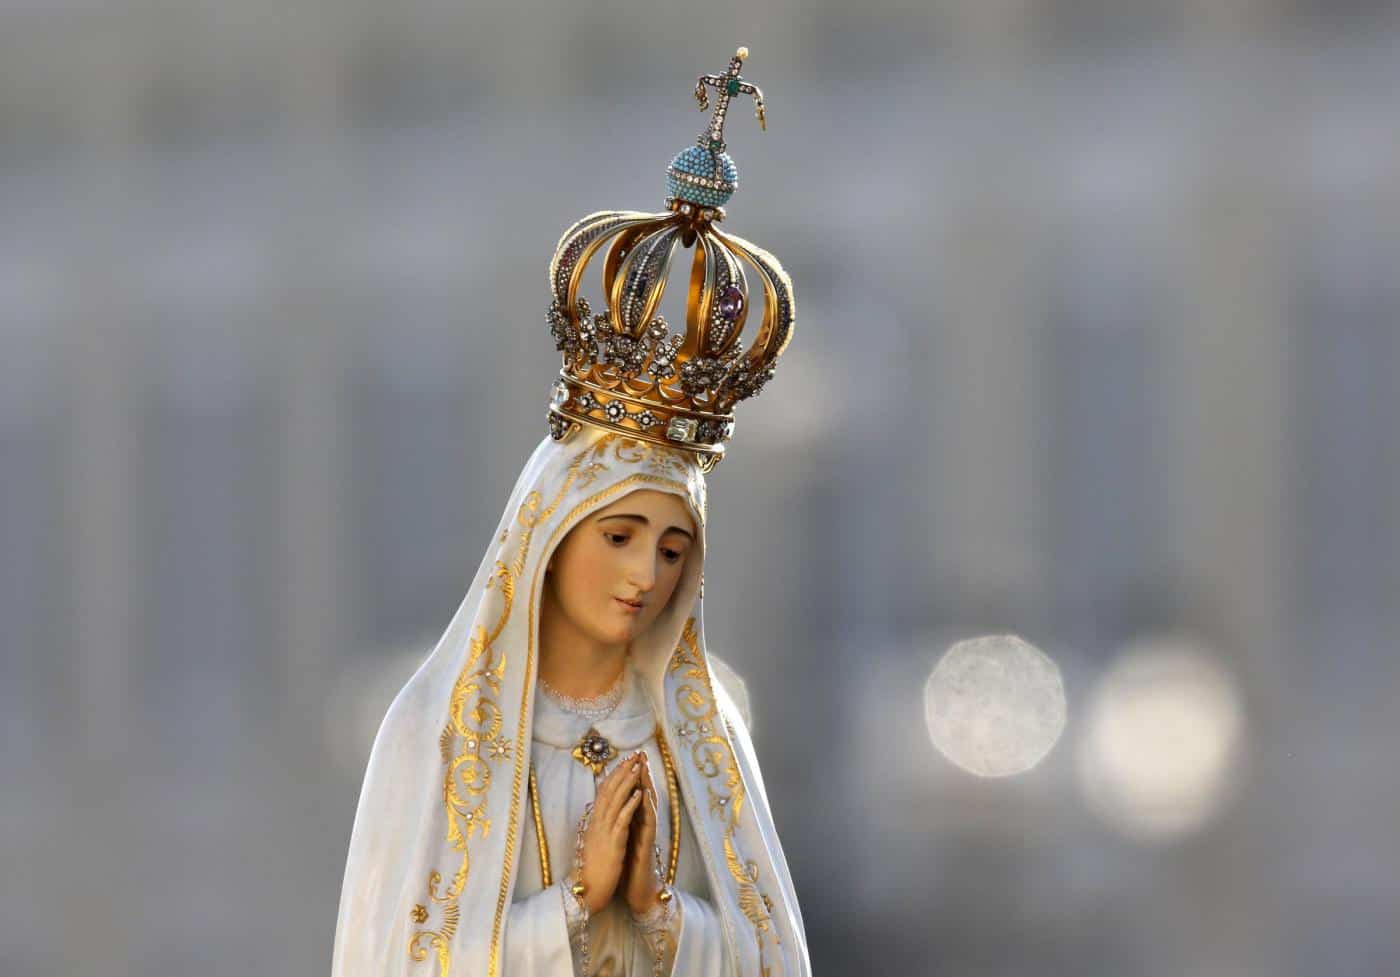 Affidamento Alla Madonna Da Parte Dei Sindaci Alleanza Cattolica